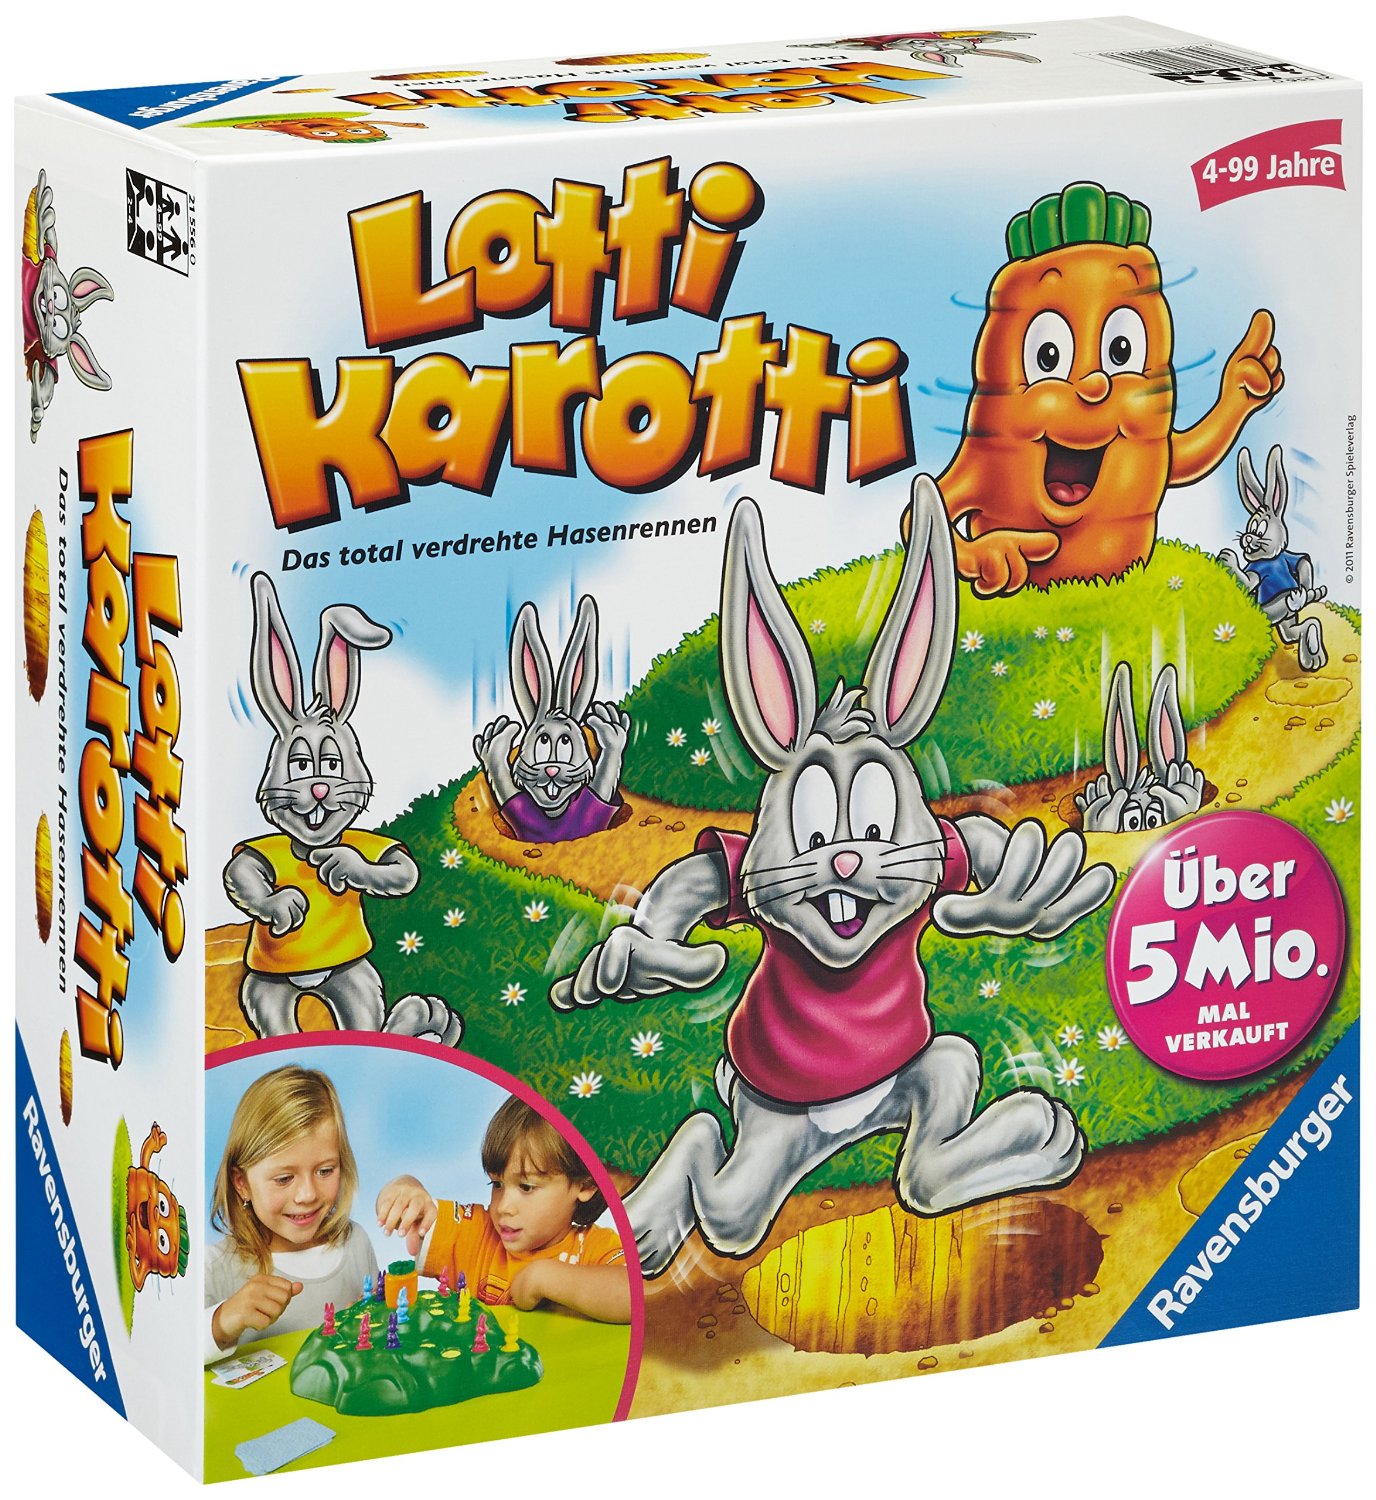 Spielanleitung Lotti Karotti